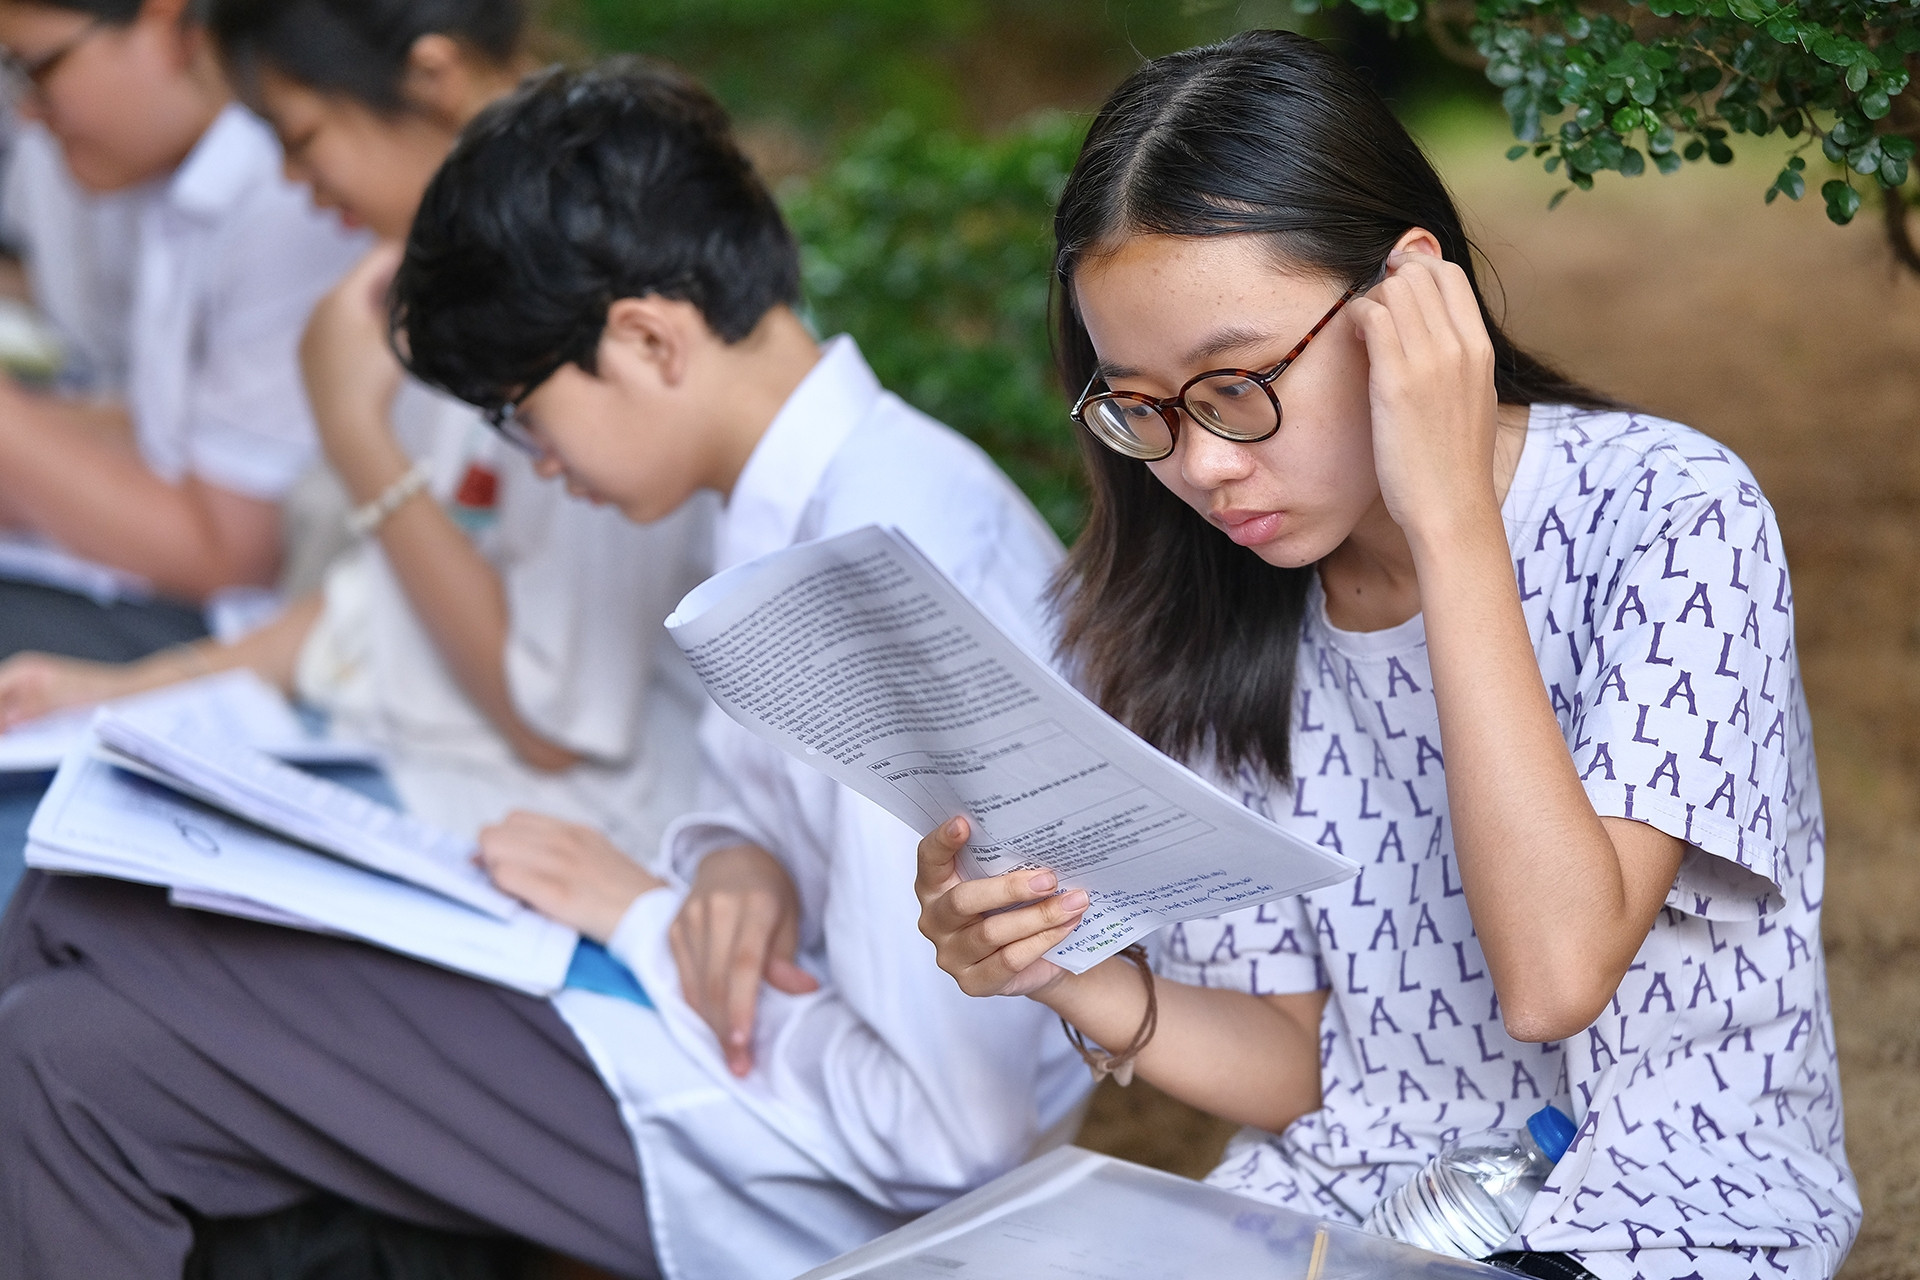 Thi lớp 10 tại Hà Nội: Khi nào công bố điểm thi, điểm chuẩn?